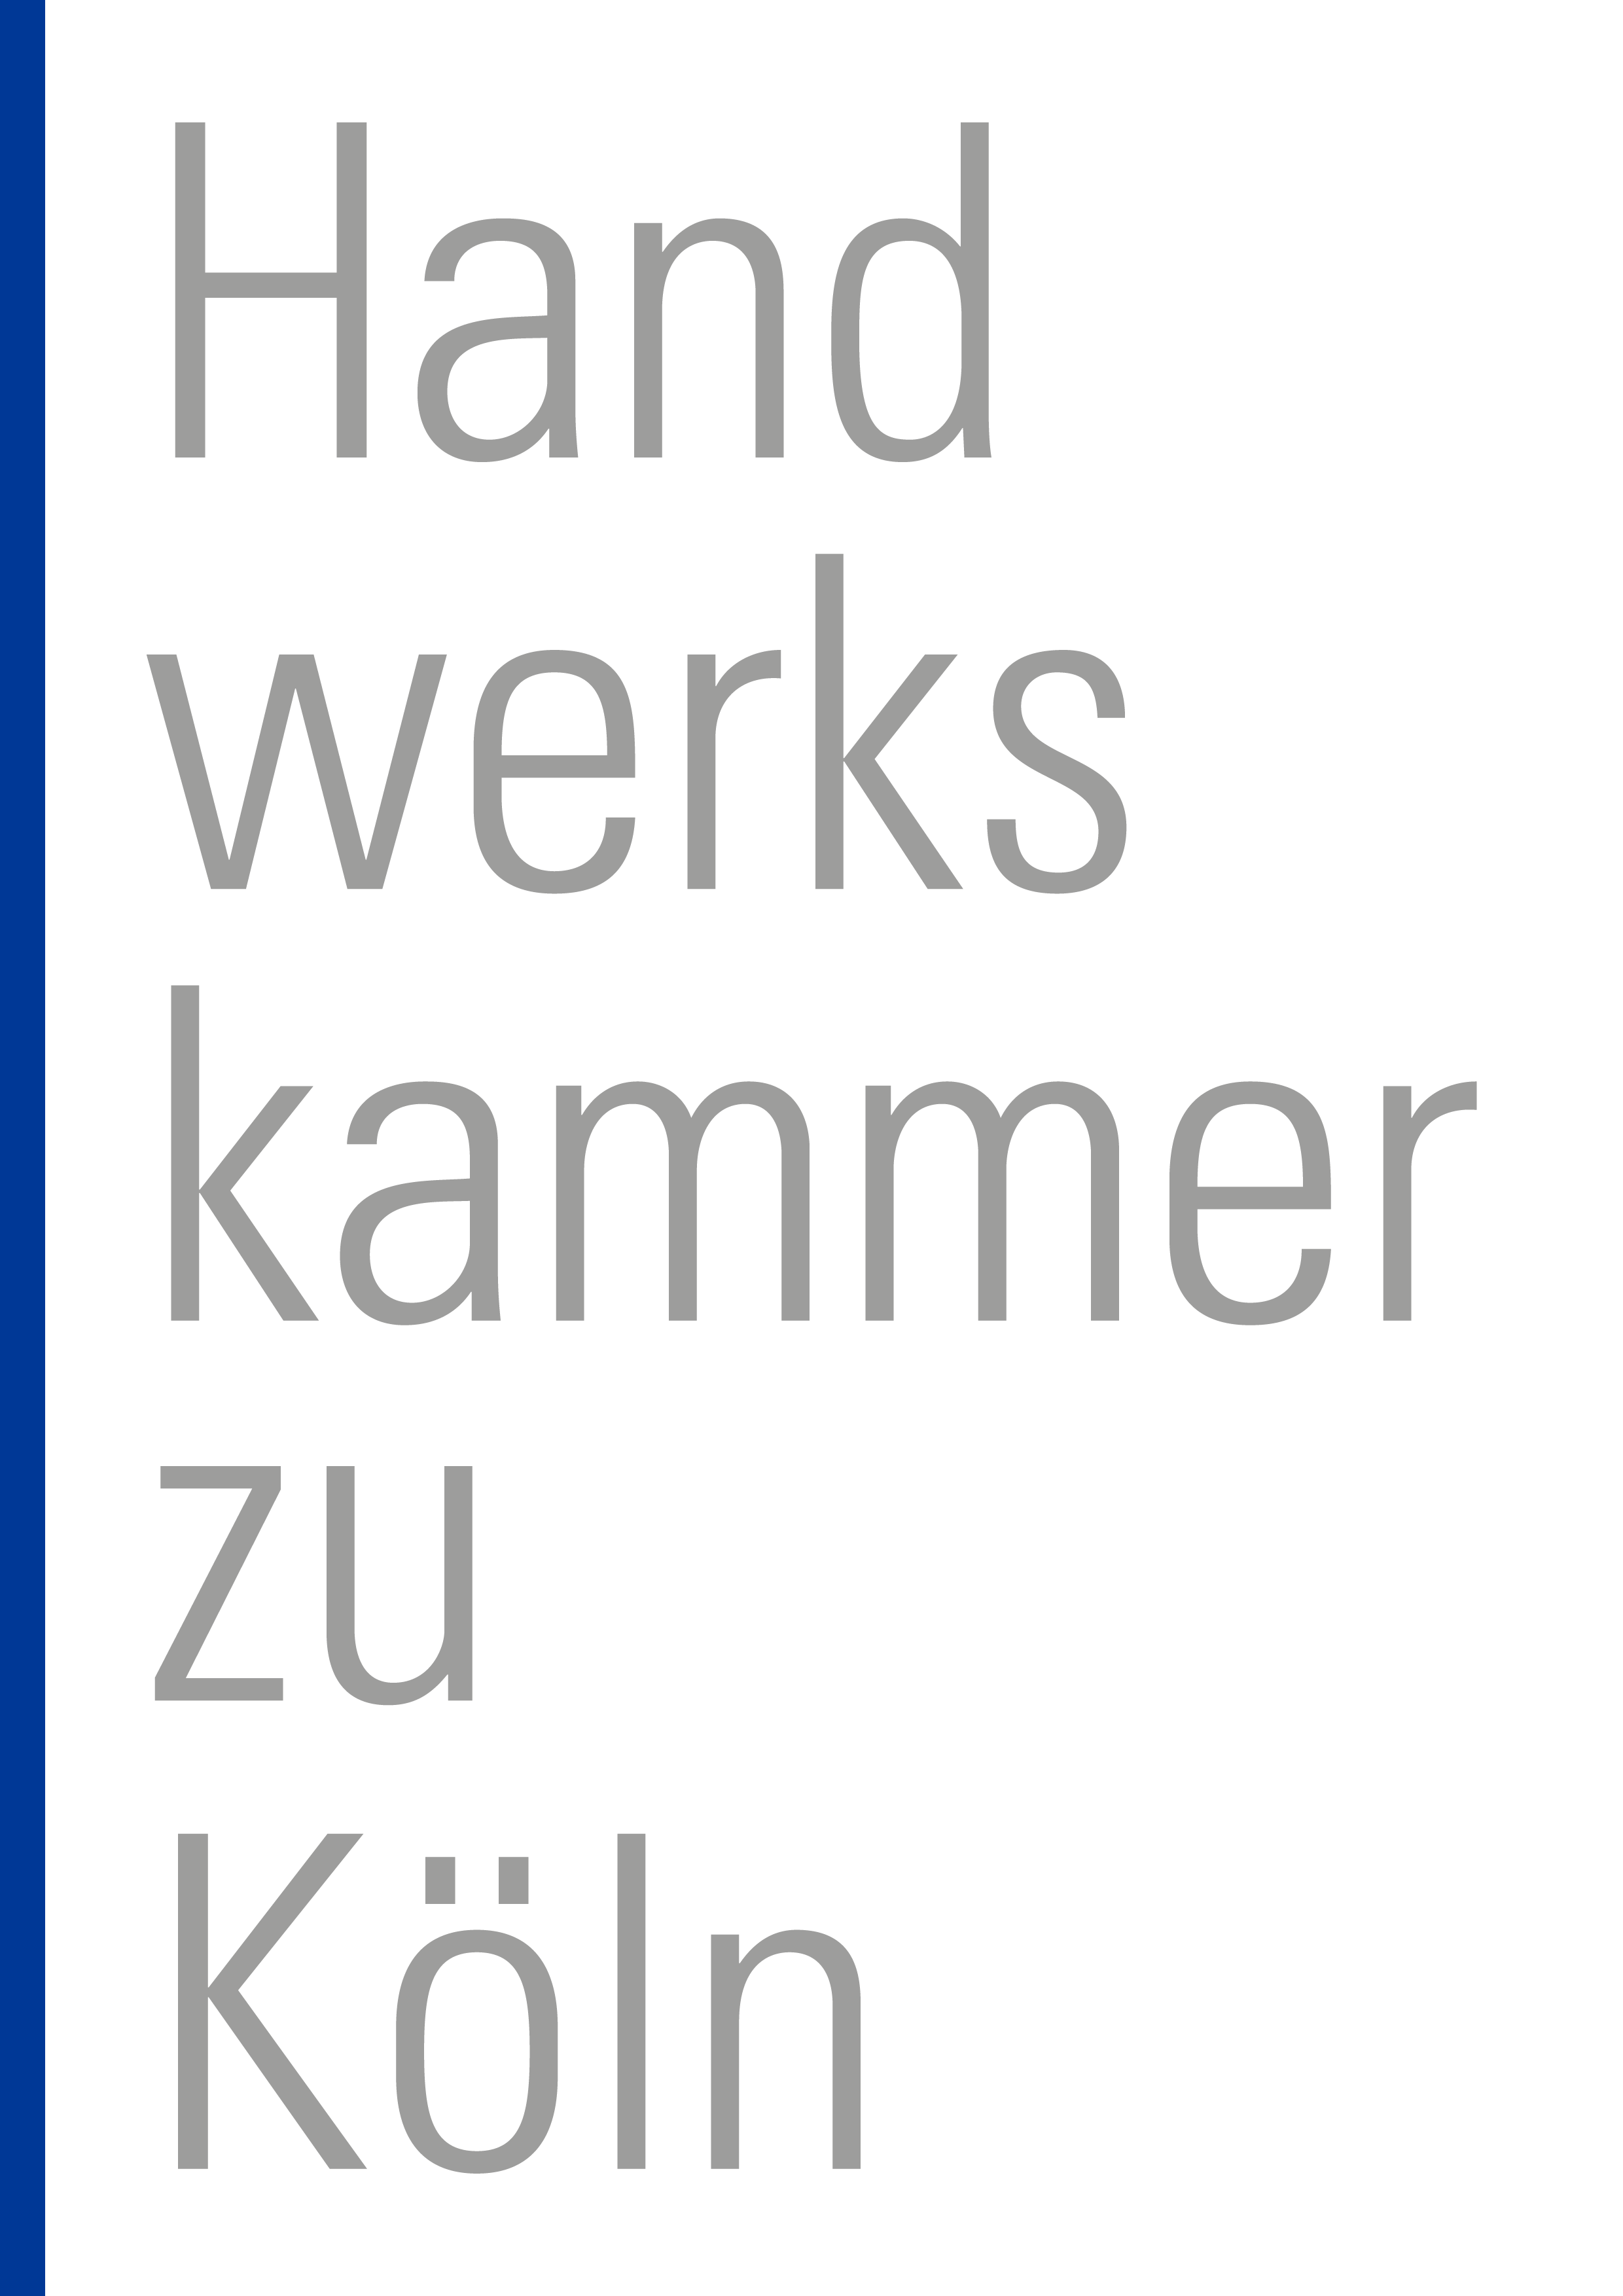 Handwerkskammer Schriftzug Grau Mit Blauem Balken.png